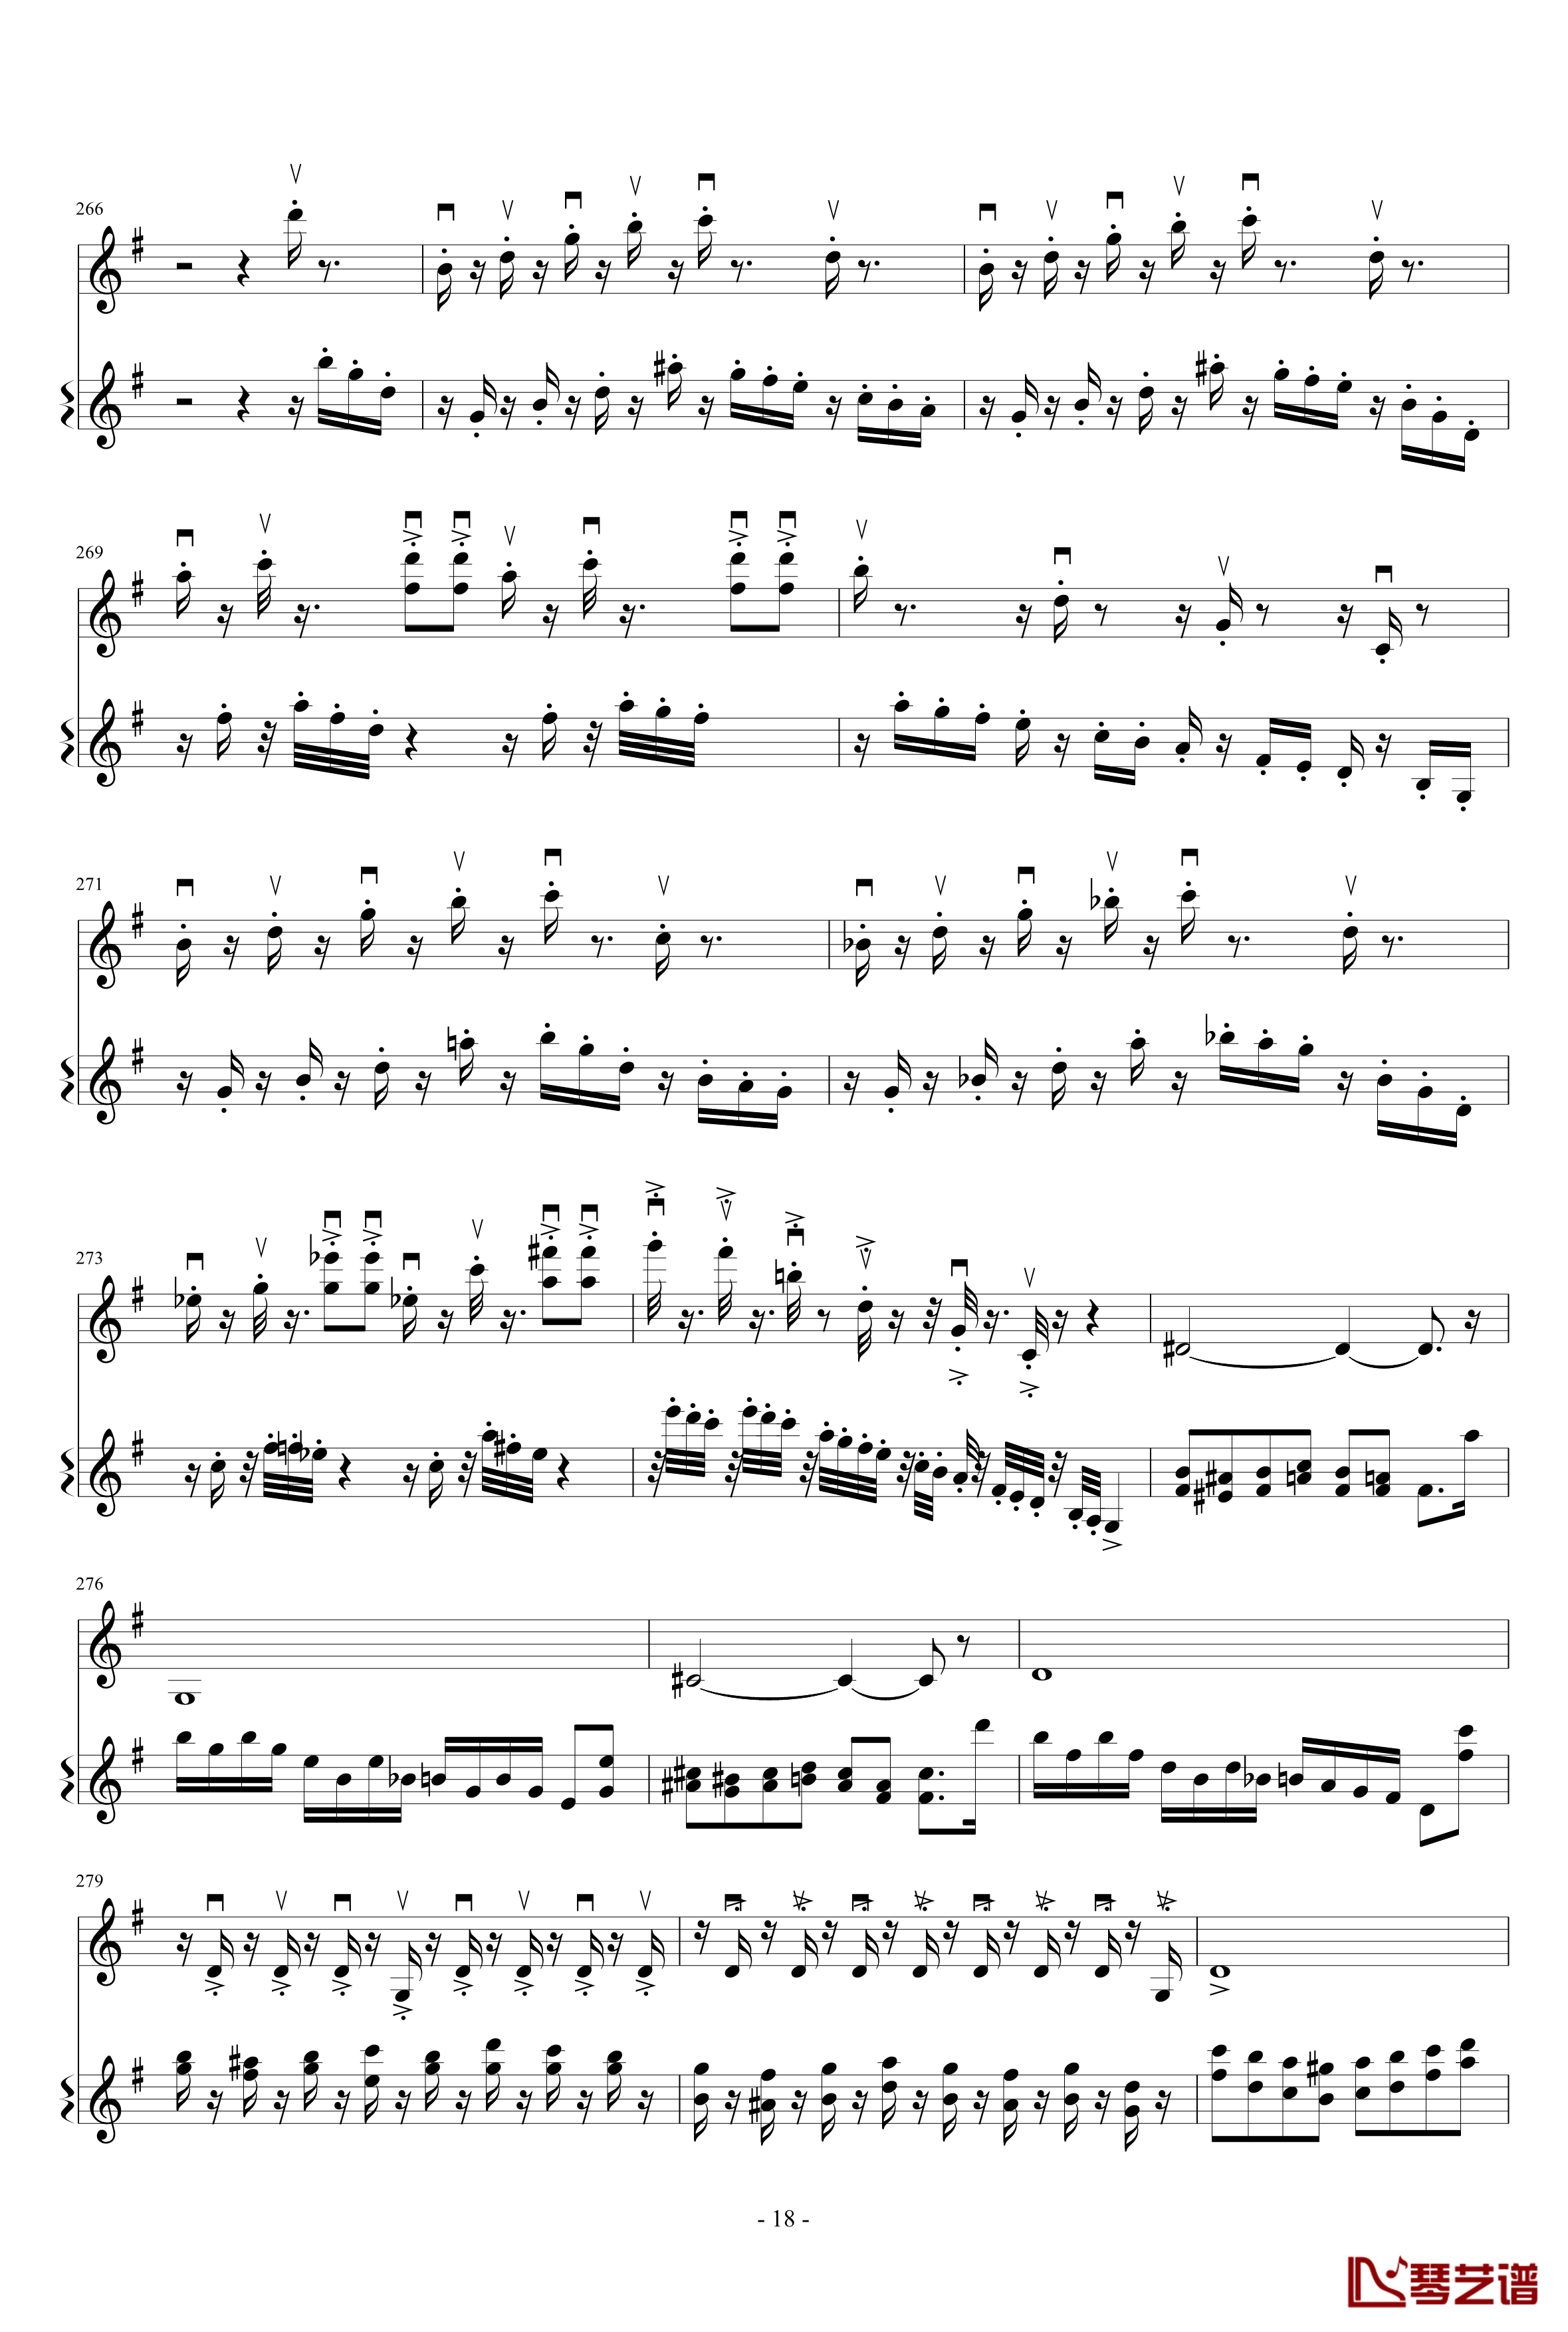 意大利国歌变奏曲钢琴谱-只修改了一个音-DXF18